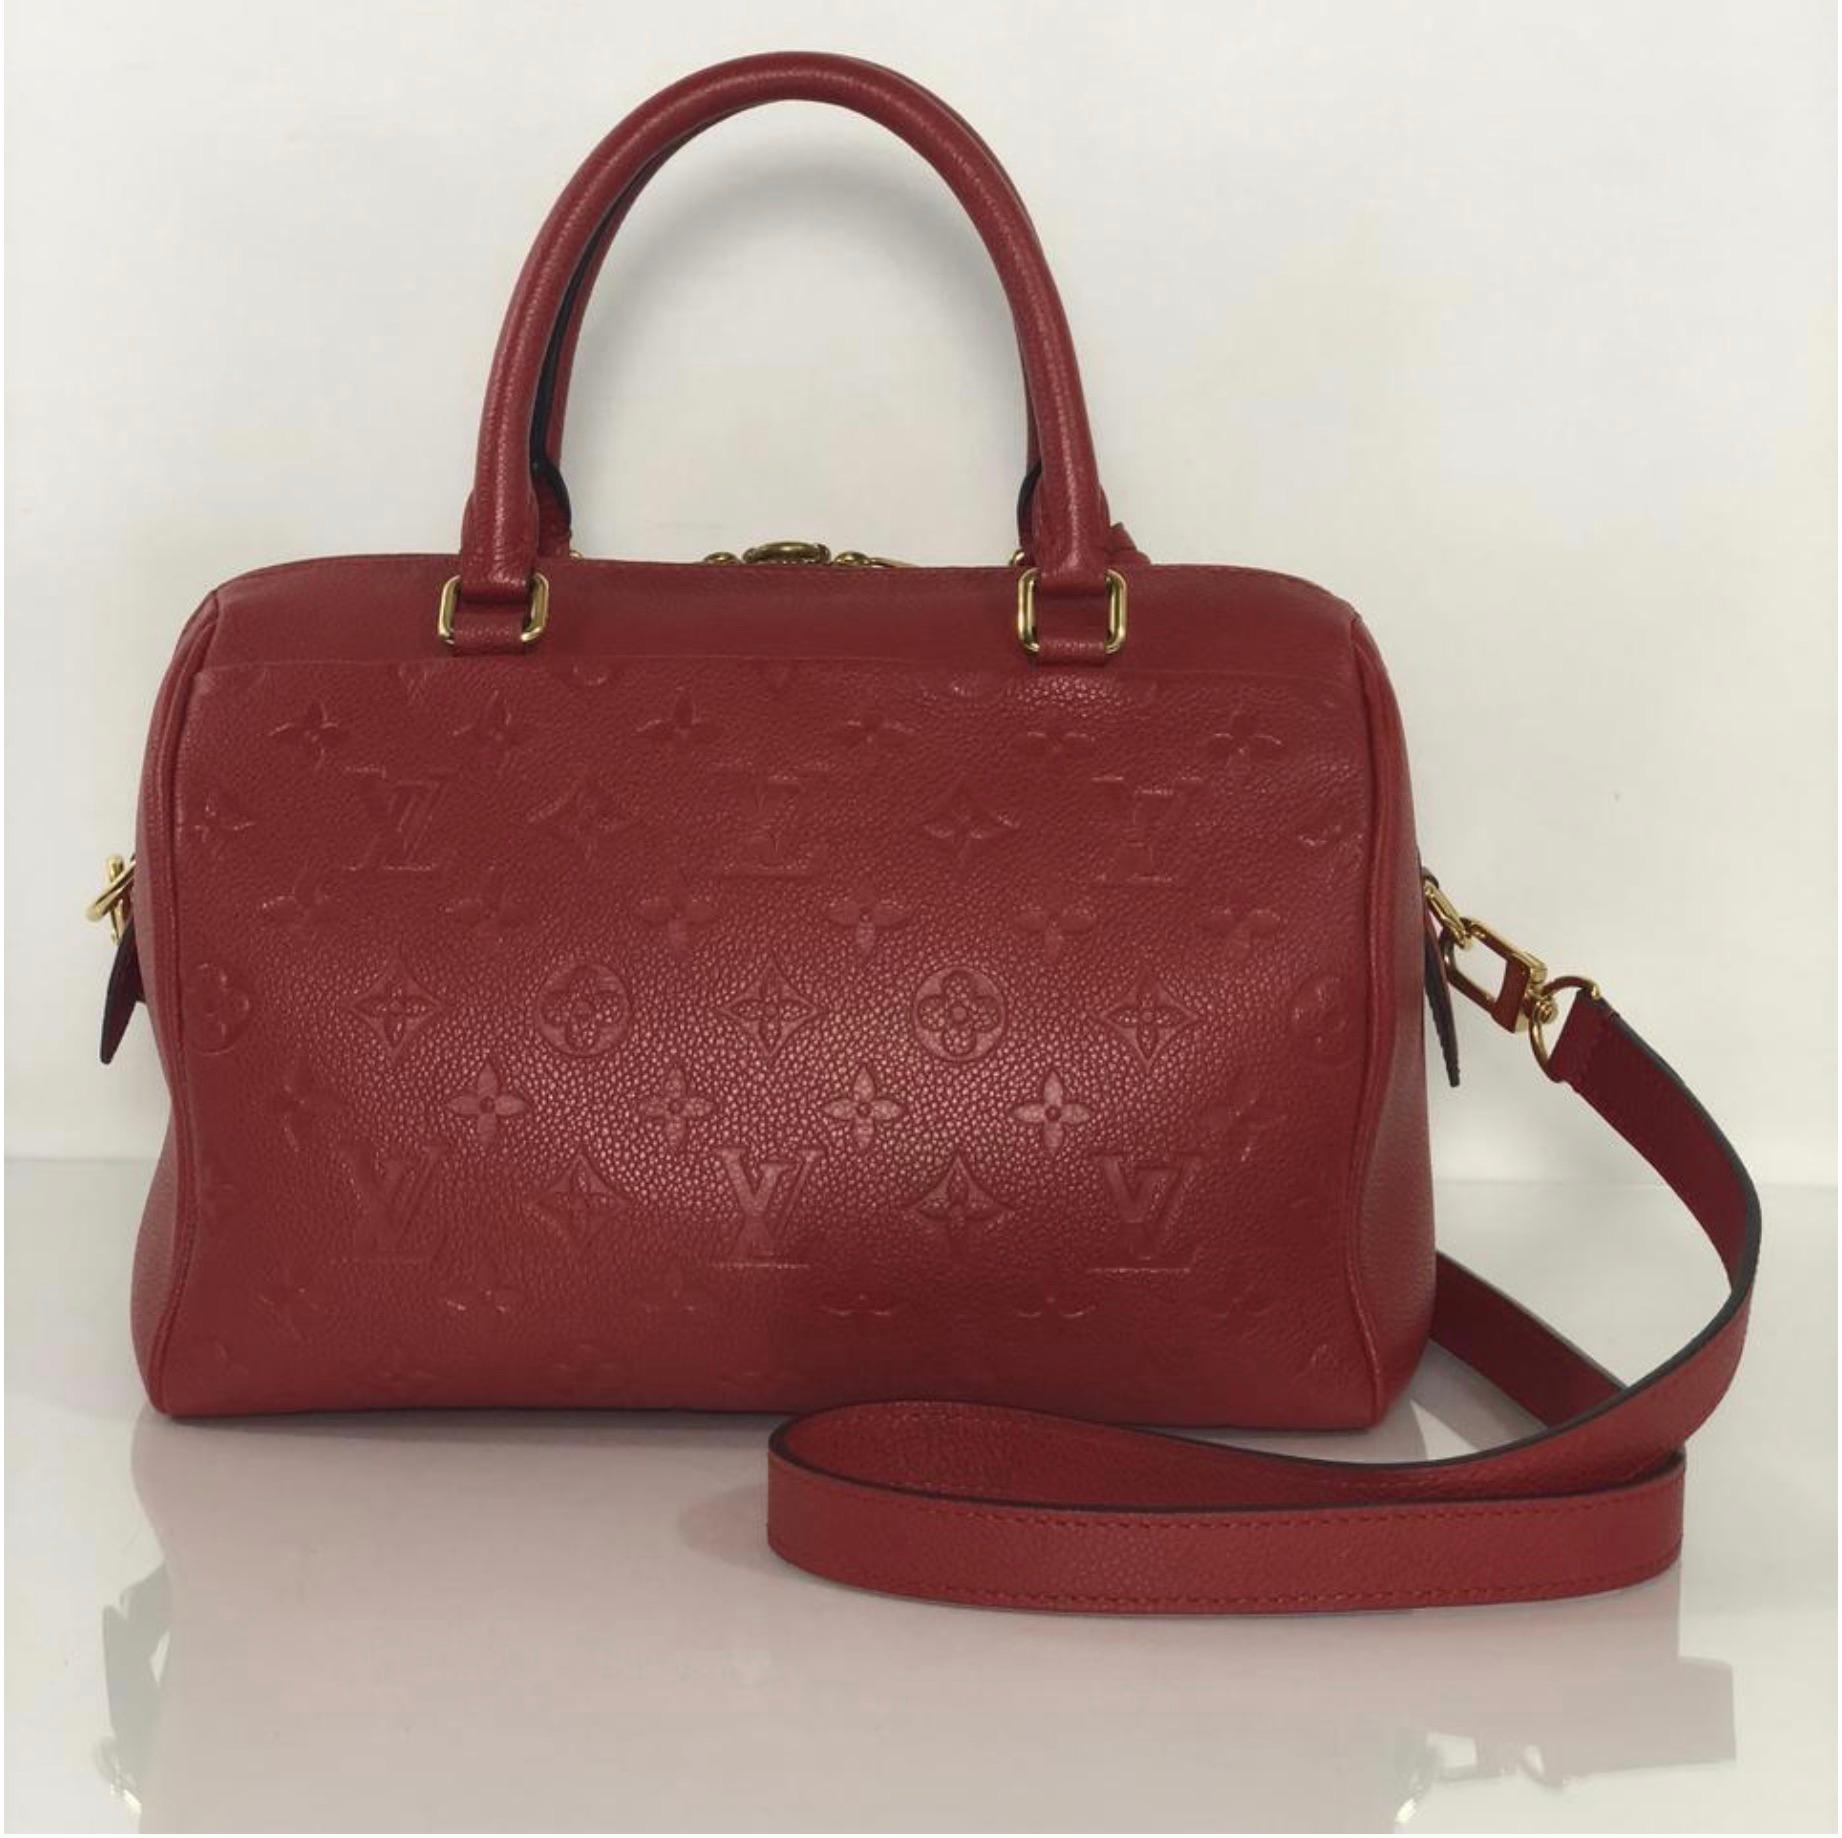 Louis Vuitton Empreinte Speedy 25 in Red Satchel Handbag For Sale 1